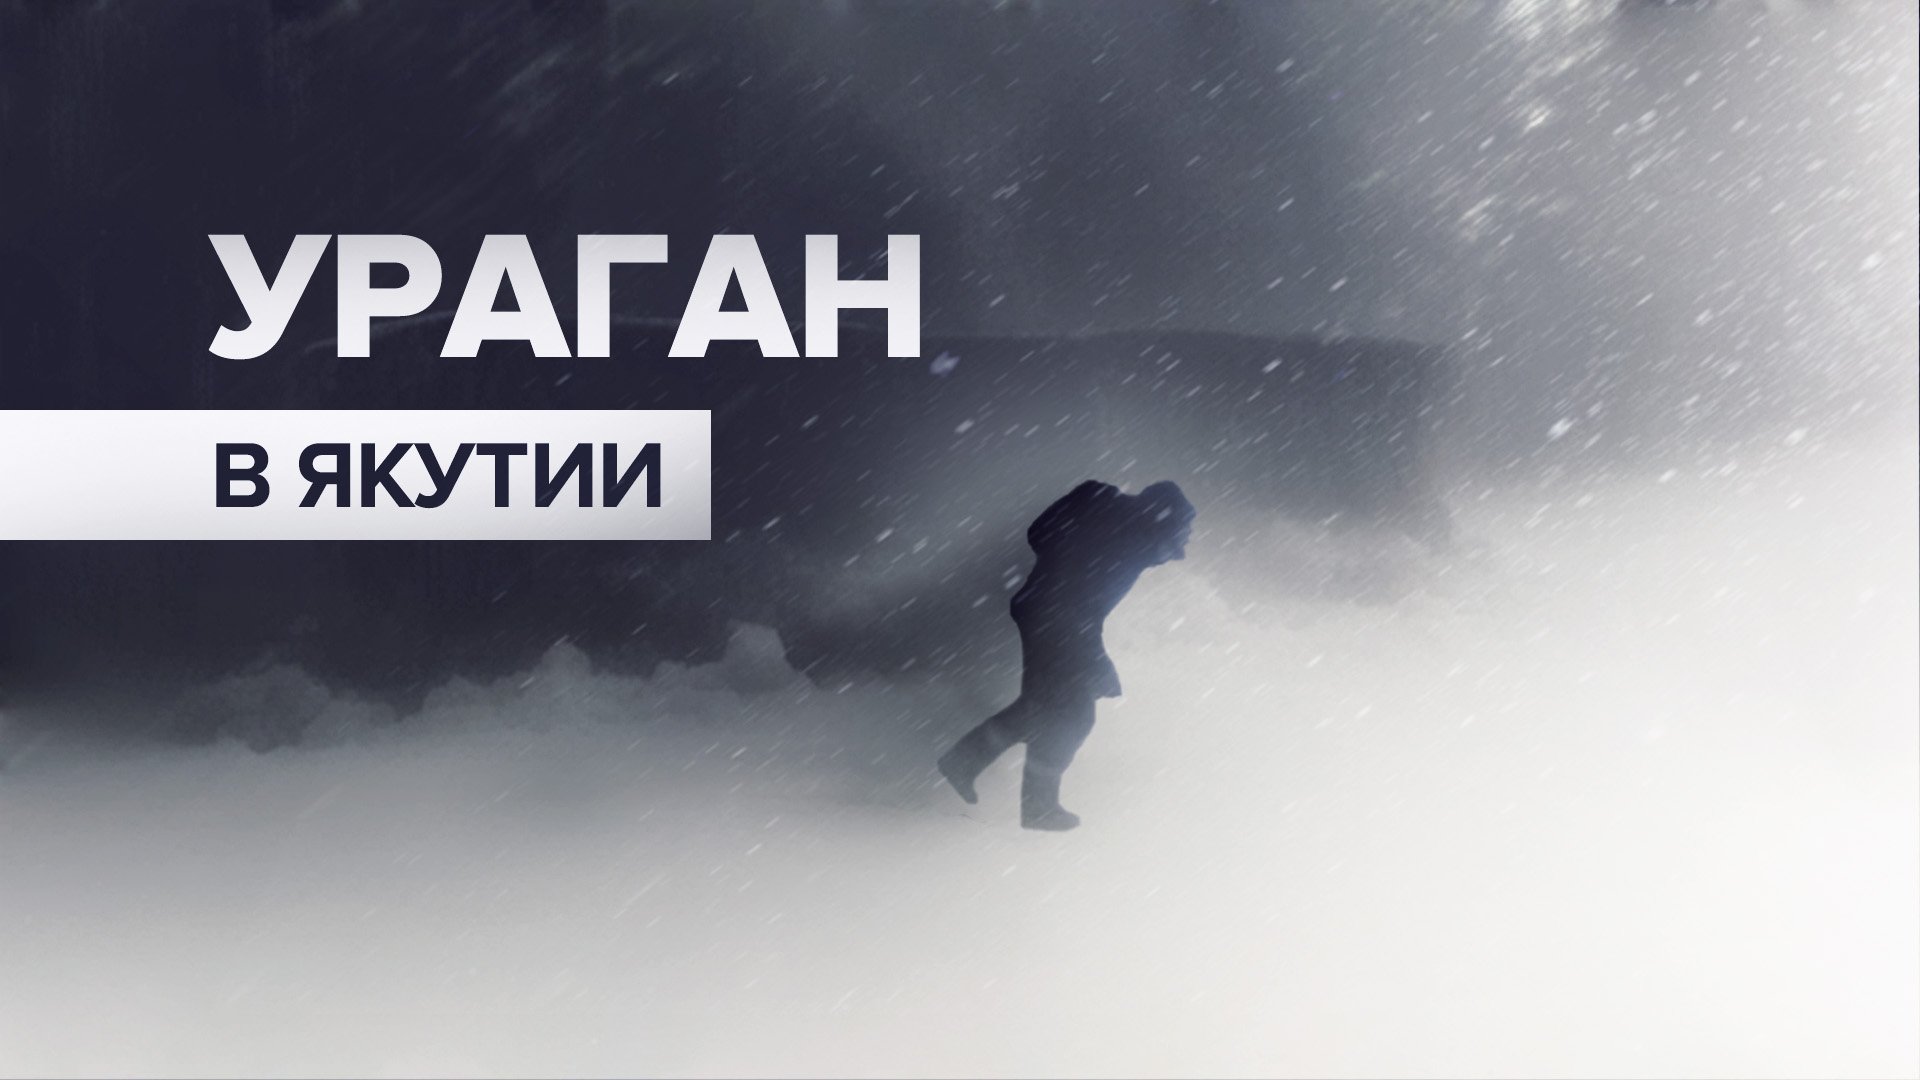 Ураганный ветер сбивает с ног жителя Якутии — видео